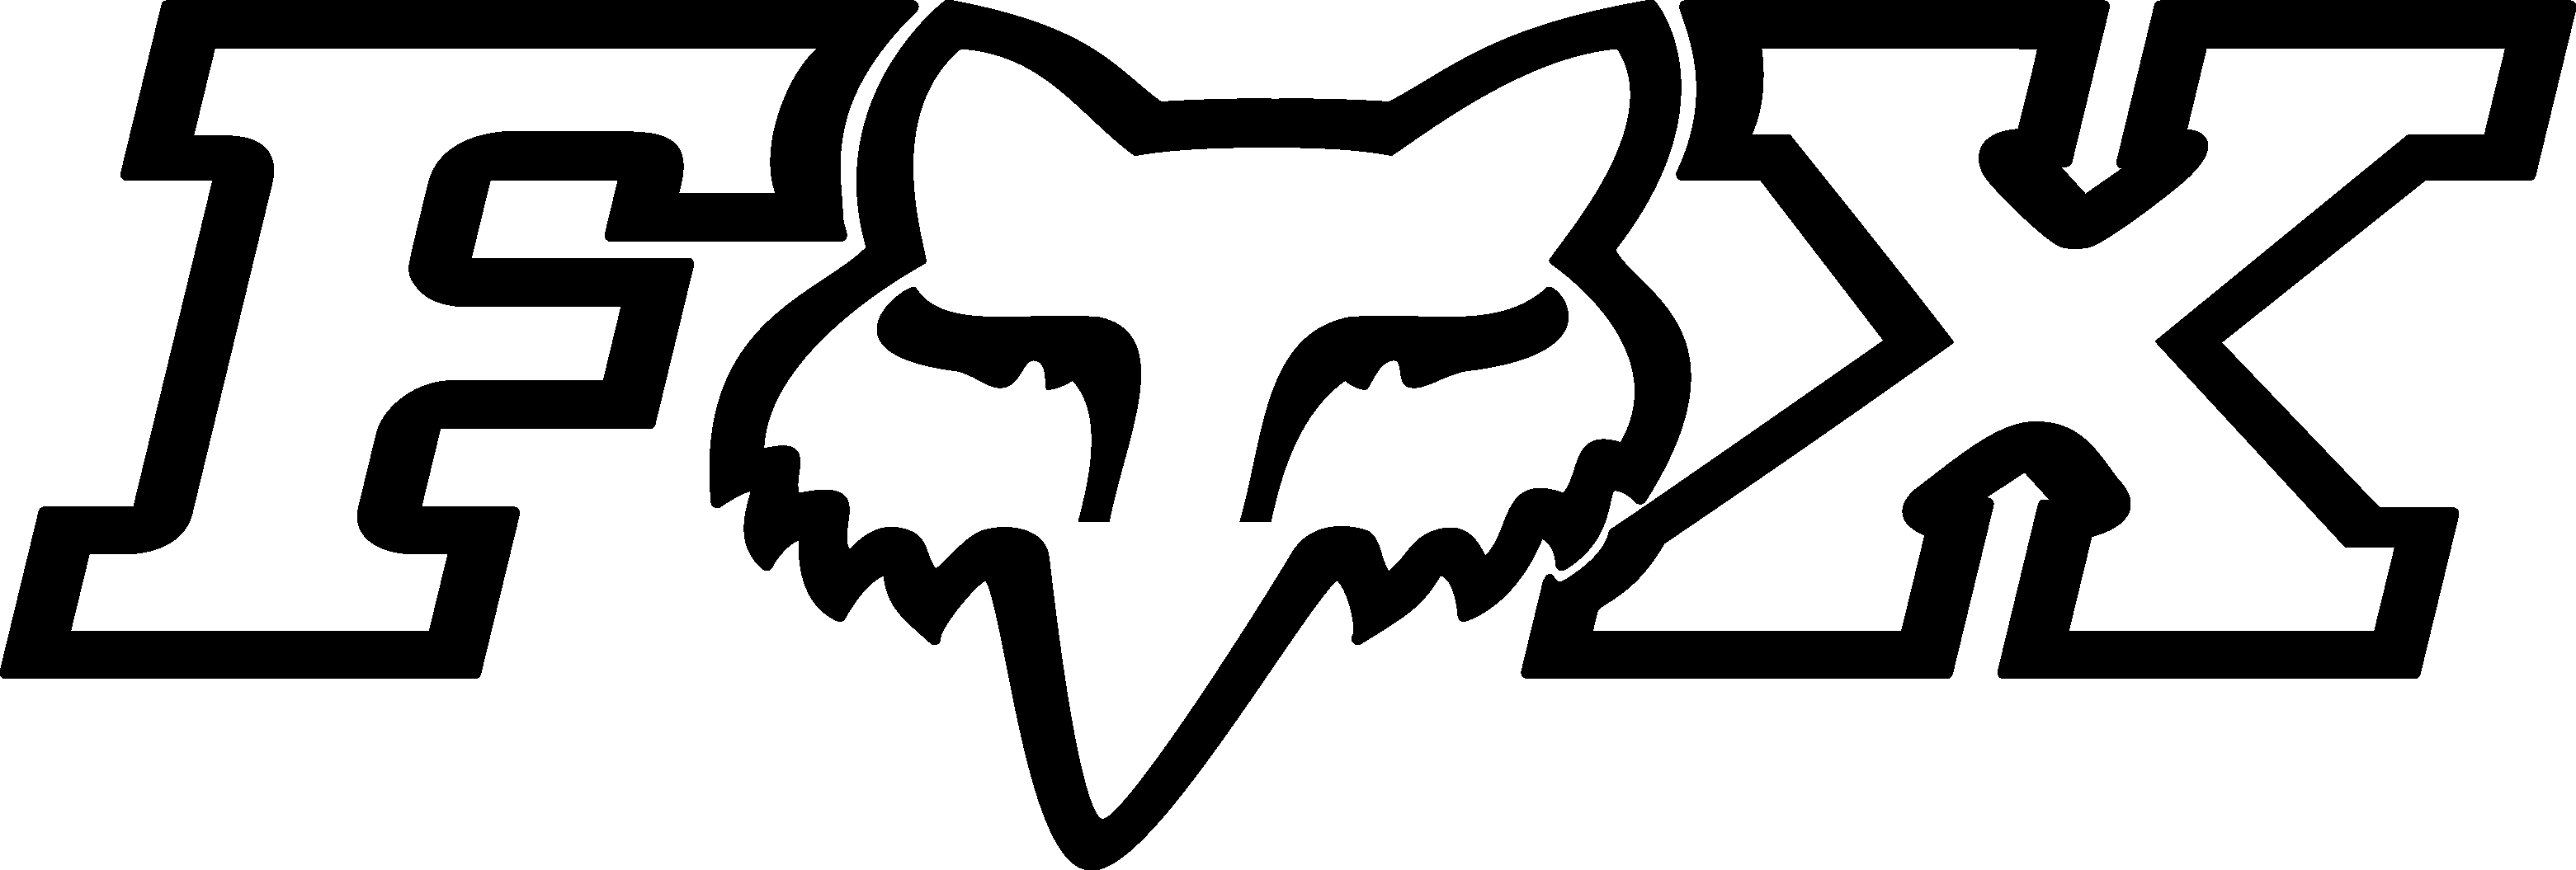 Fox Racing Logo Download Vector